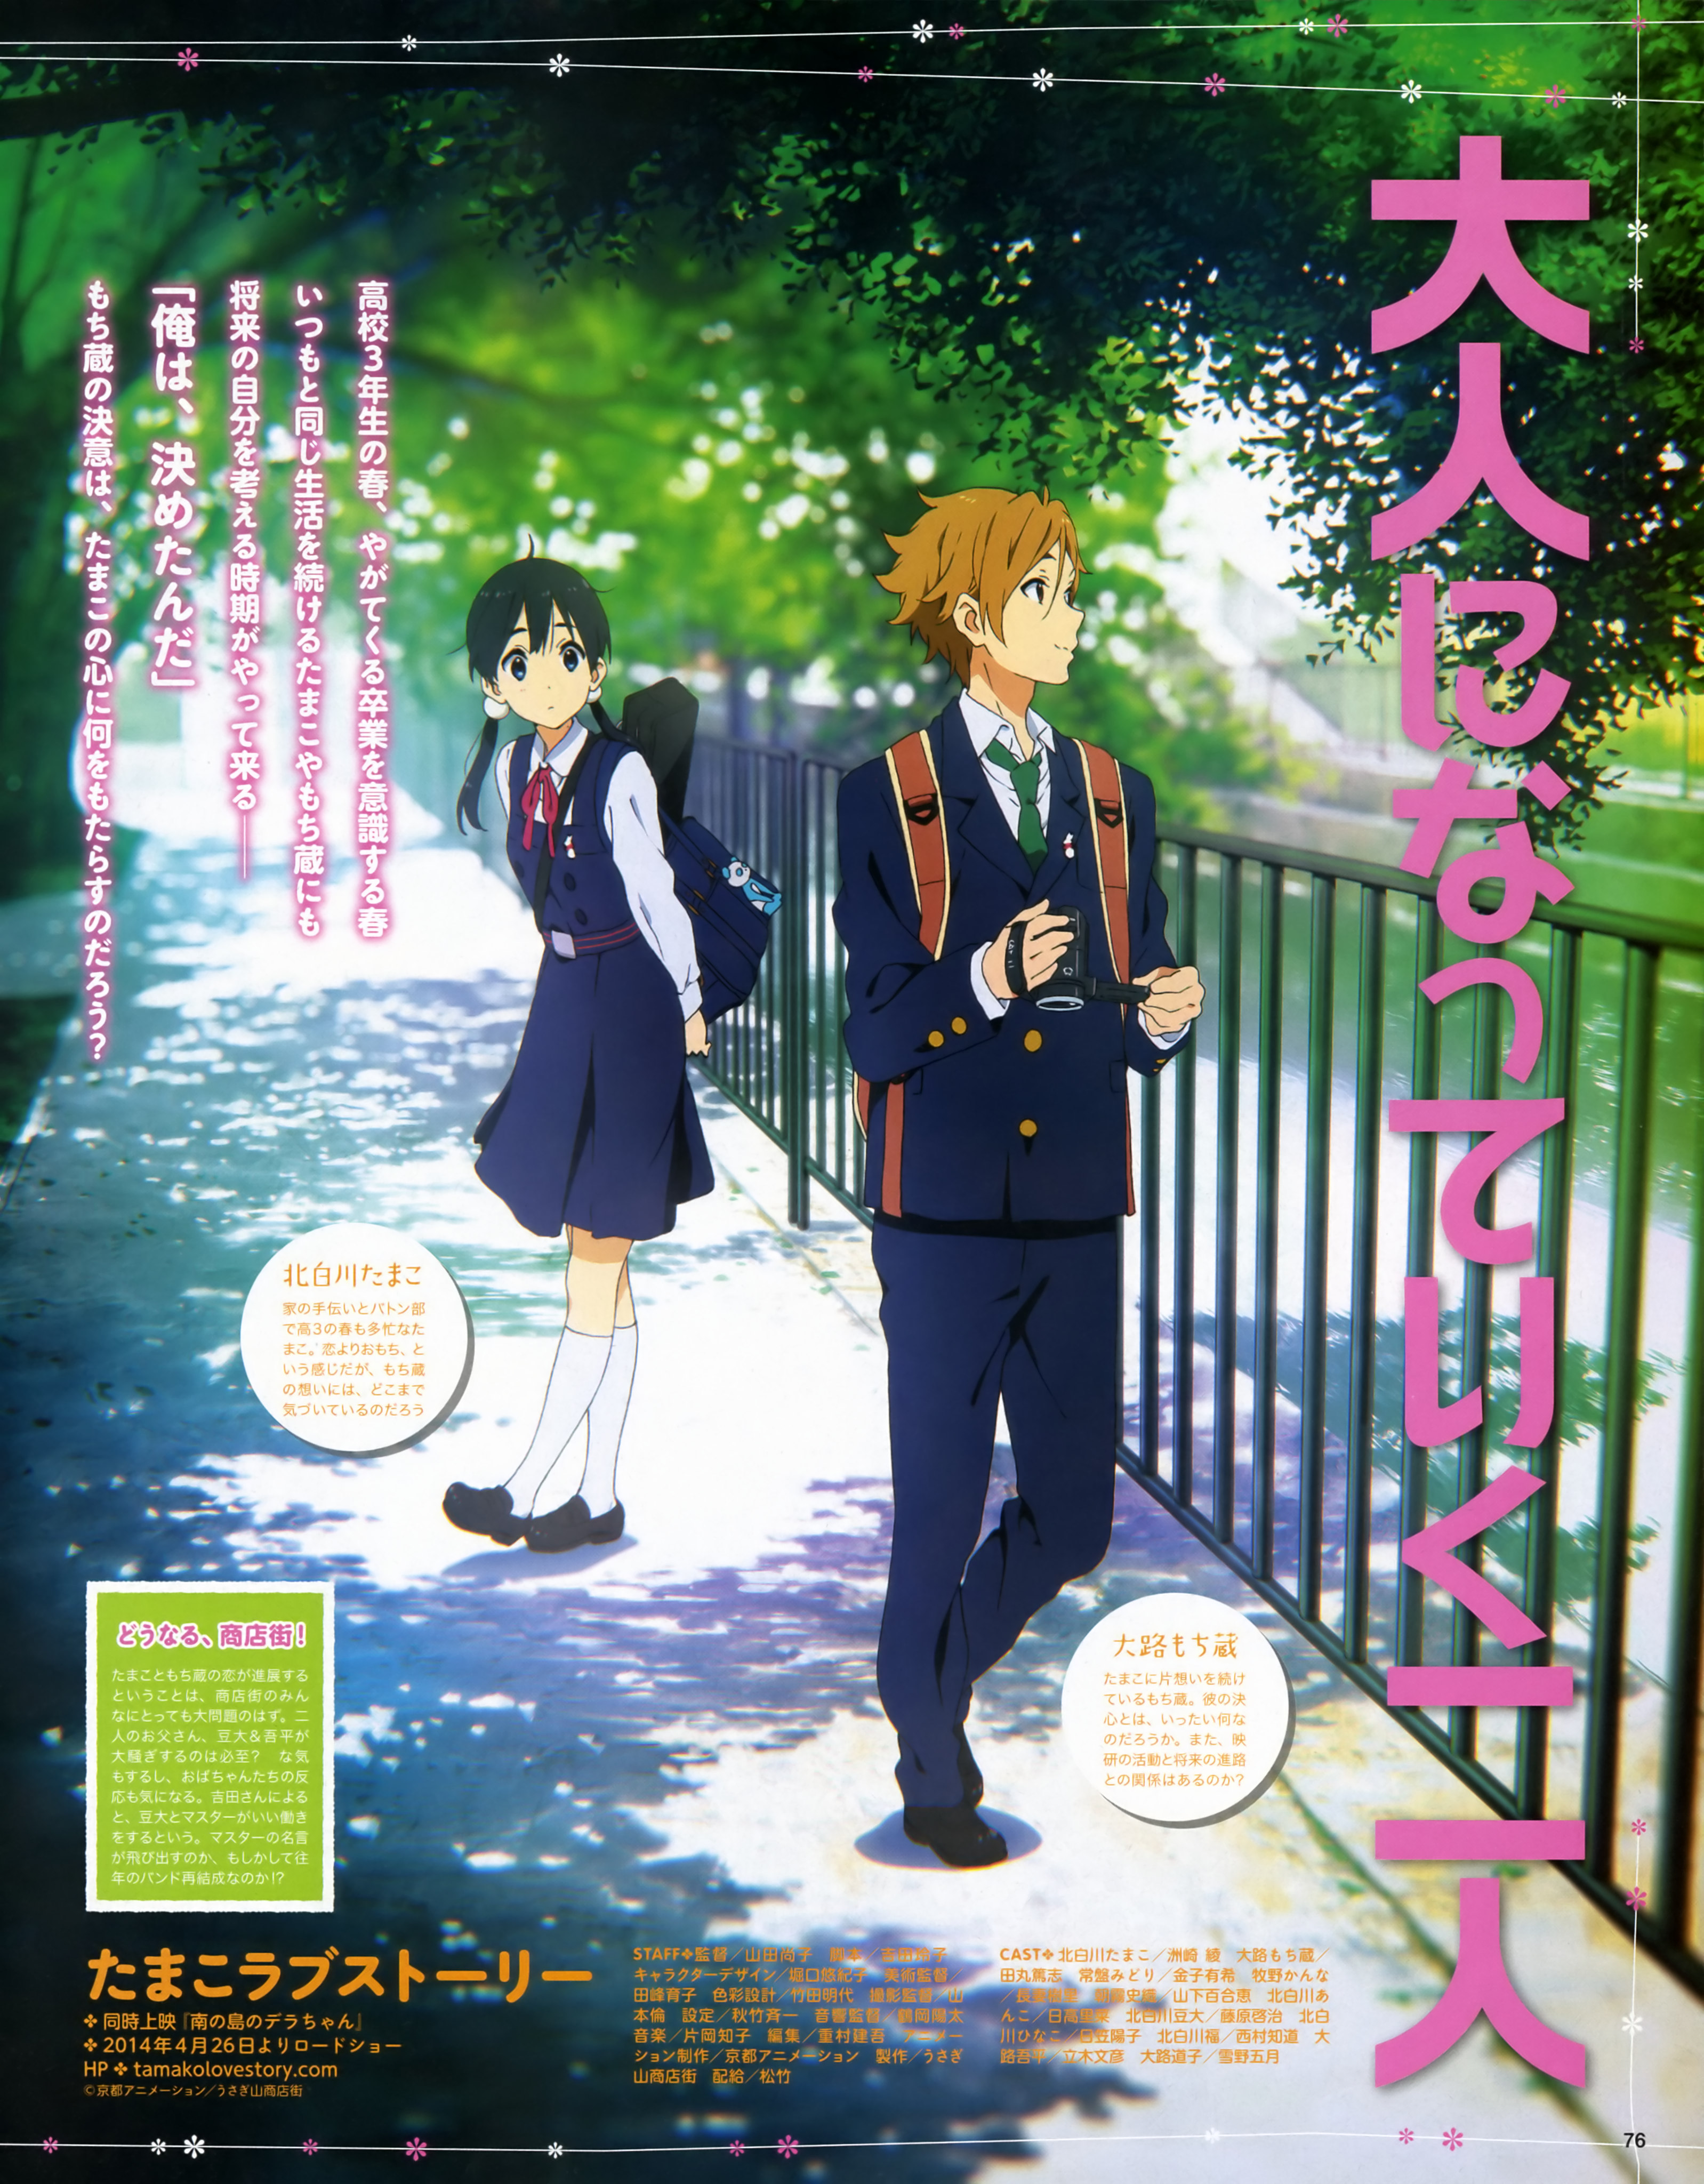 45 Tamako Love Story Anime Hd Wallpapers Wallpapersafari